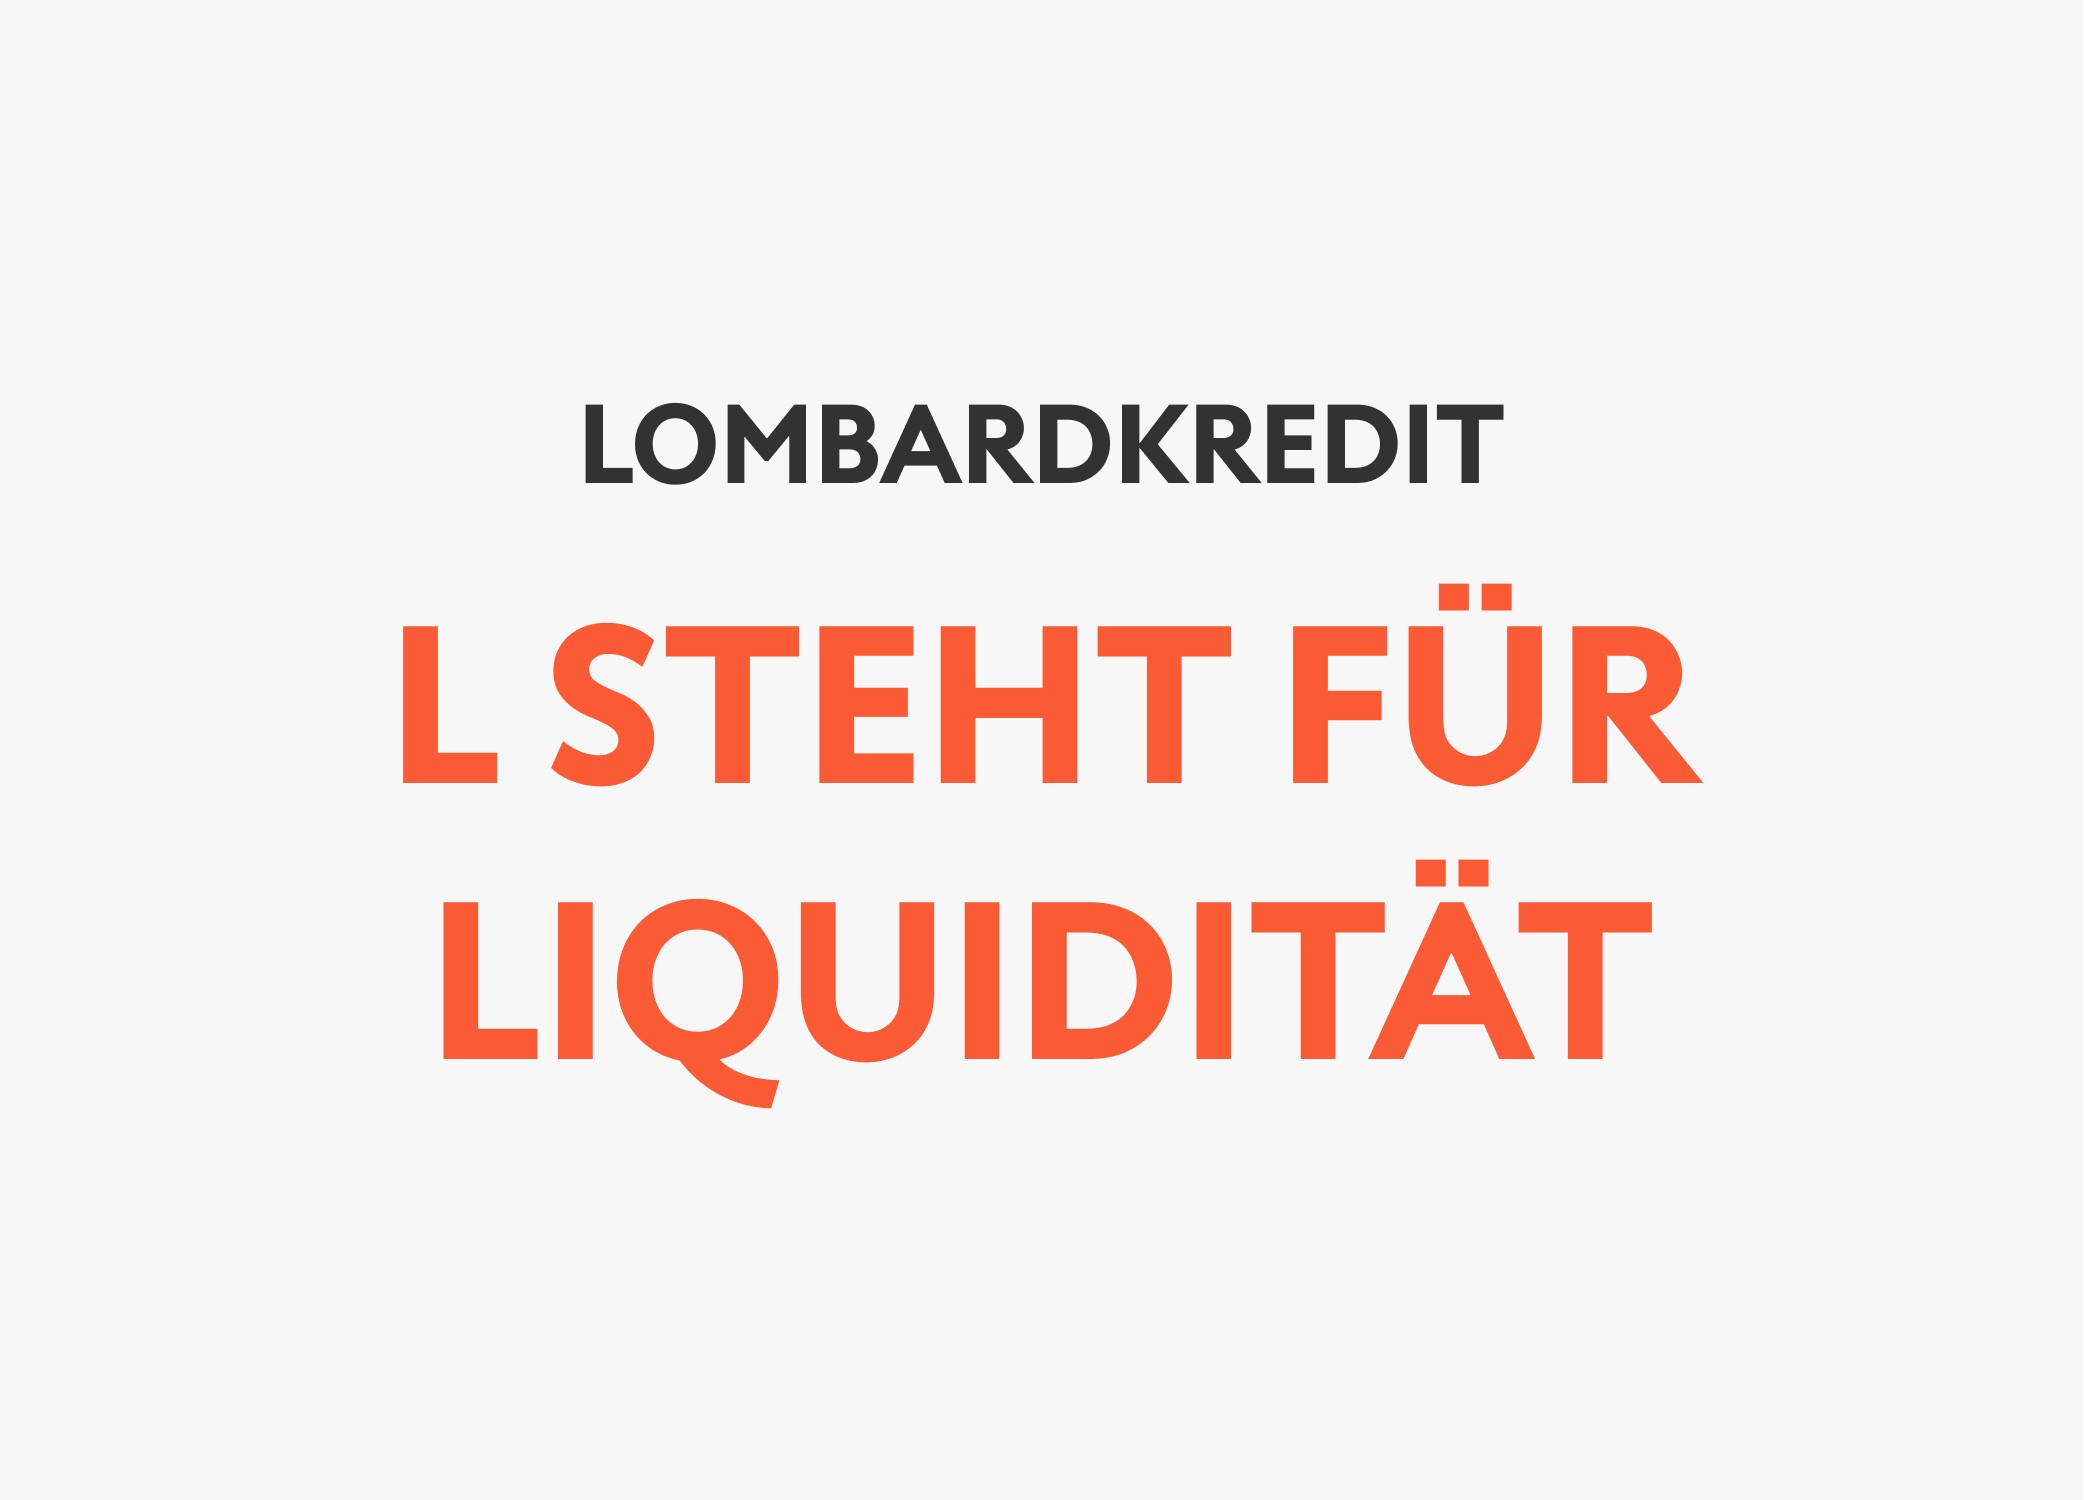 Lombardkredit: L steht für Liquidität